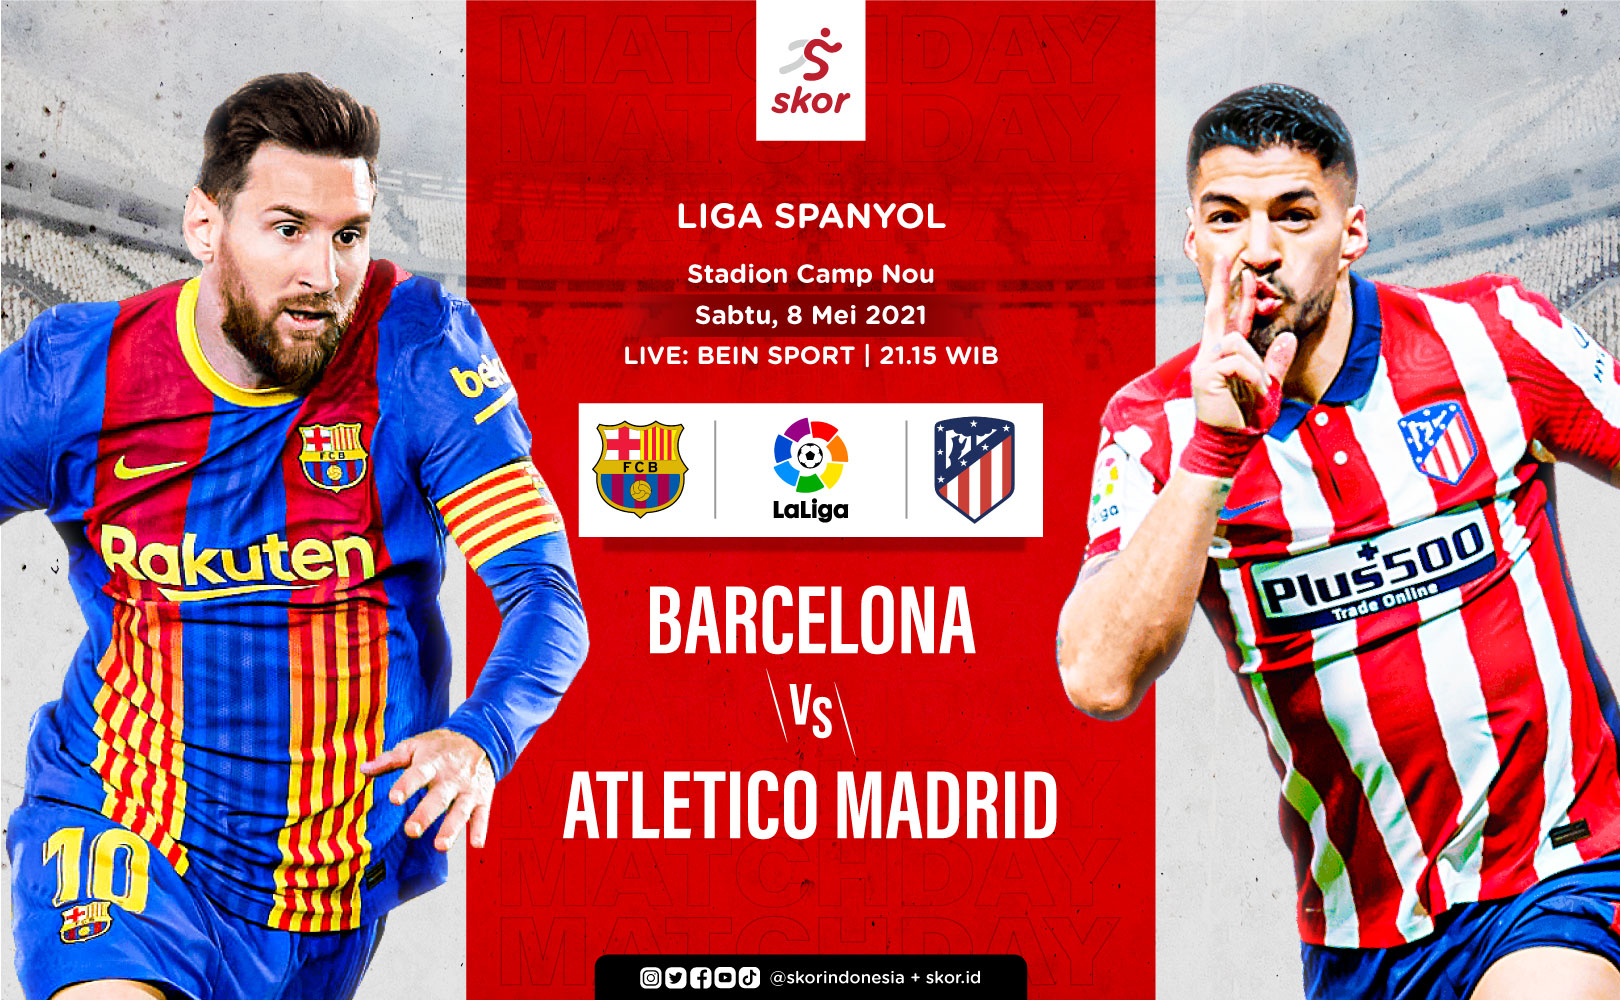 Link Live Streaming Barcelona vs Atletico Madrid di Liga Spanyol